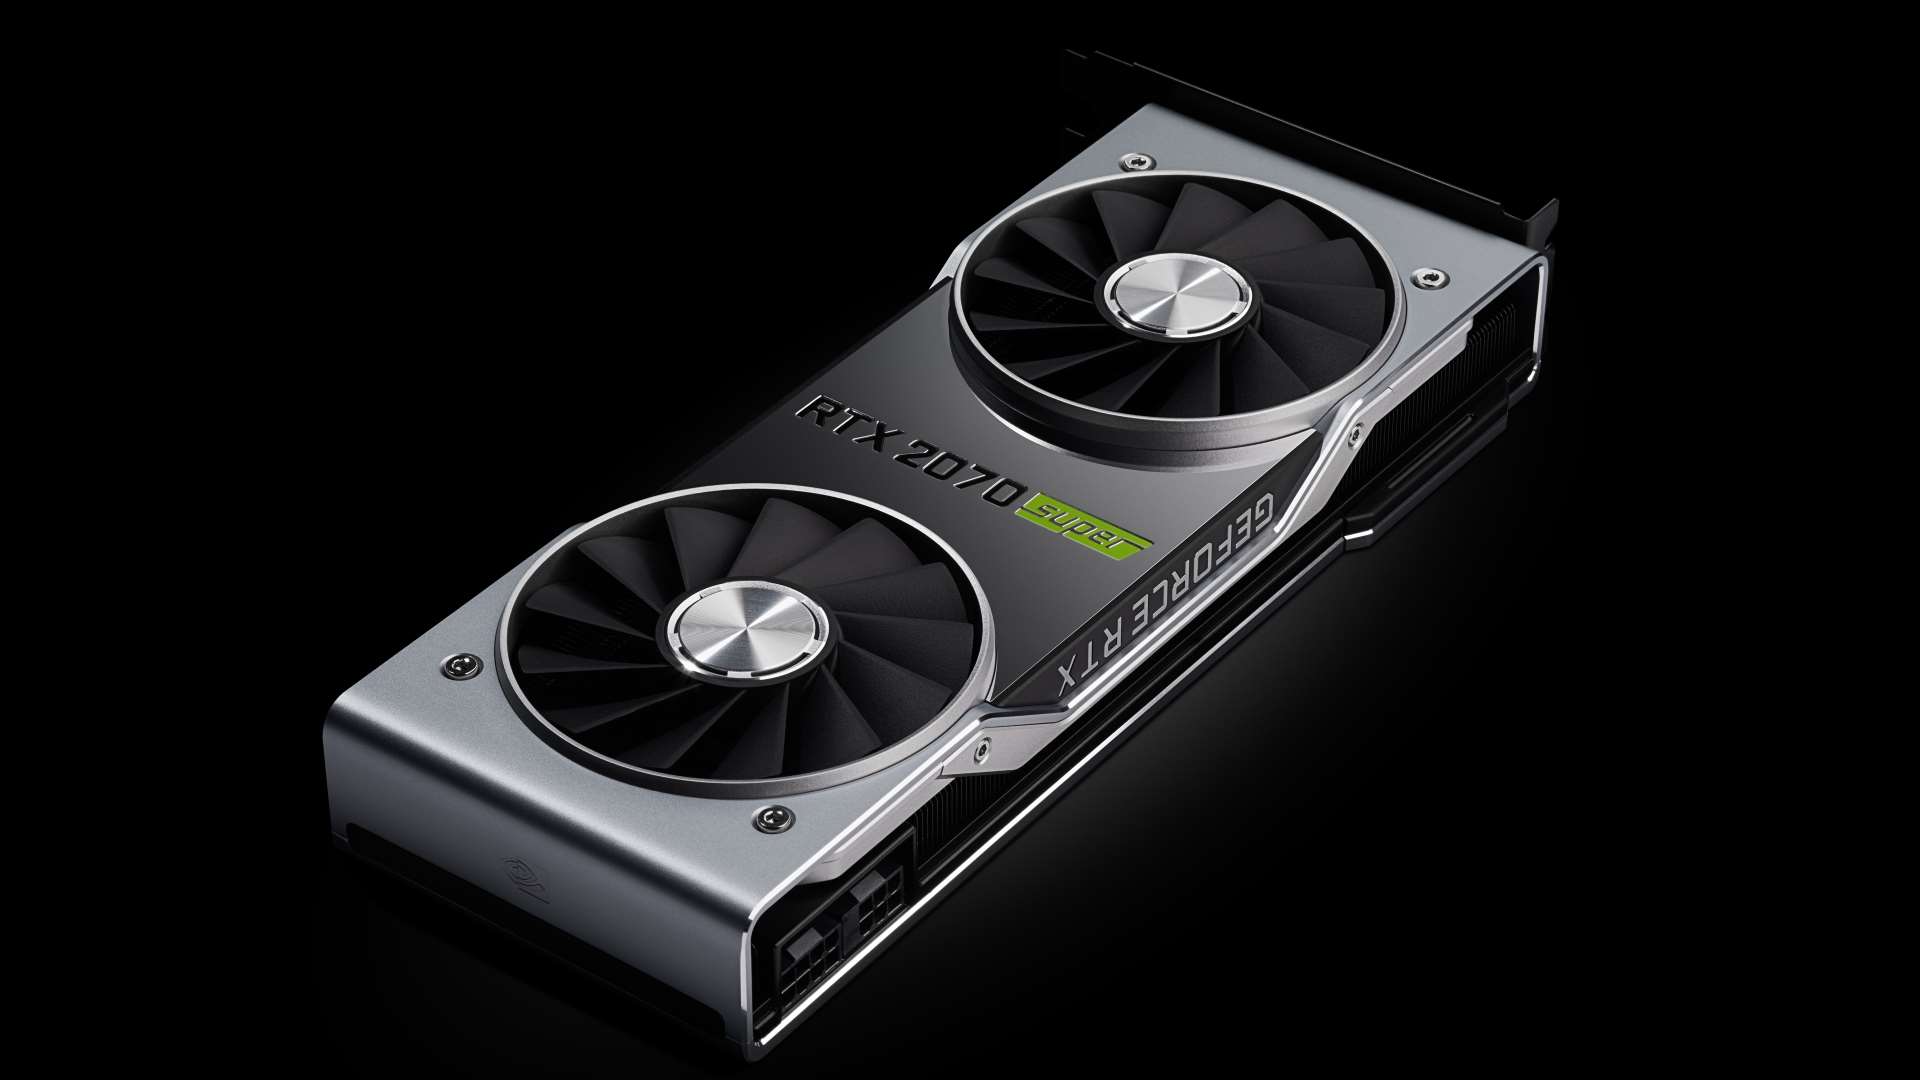 Nvidia RTX 2070 Super review: the RX 5700 XT runs it close, but